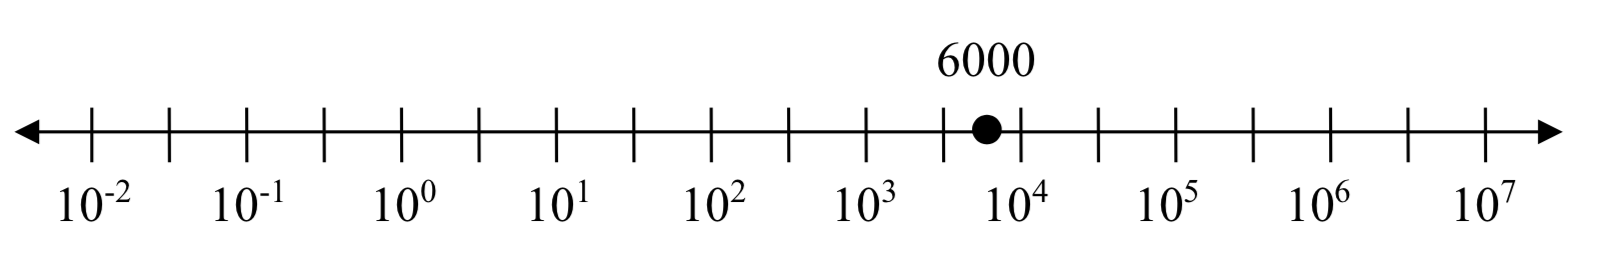 Una línea numérica con ticks igualmente espaciados etiquetados 10 al negativo 2, 10 al negativo 1, 10 al cero, 10 al 1, 10 al 2, y así sucesivamente hasta 10 al 7. Hay un punto etiquetado 6000 colocado a mitad de camino entre 10 a la 3.5 y 10 a la 4.